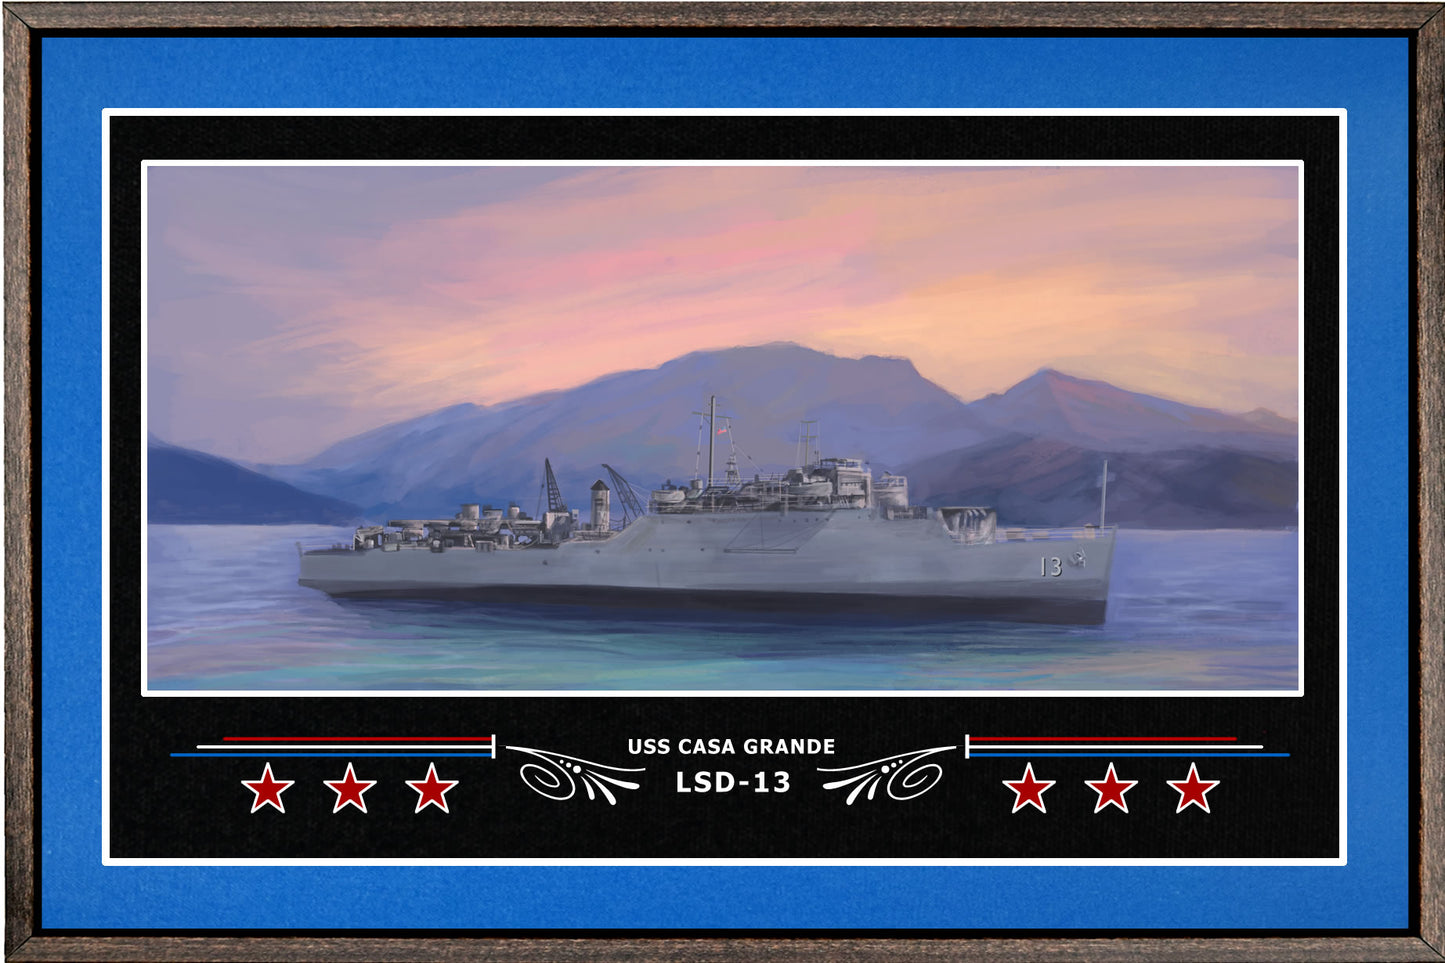 USS CASA GRANDE LSD 13 BOX FRAMED CANVAS ART BLUE